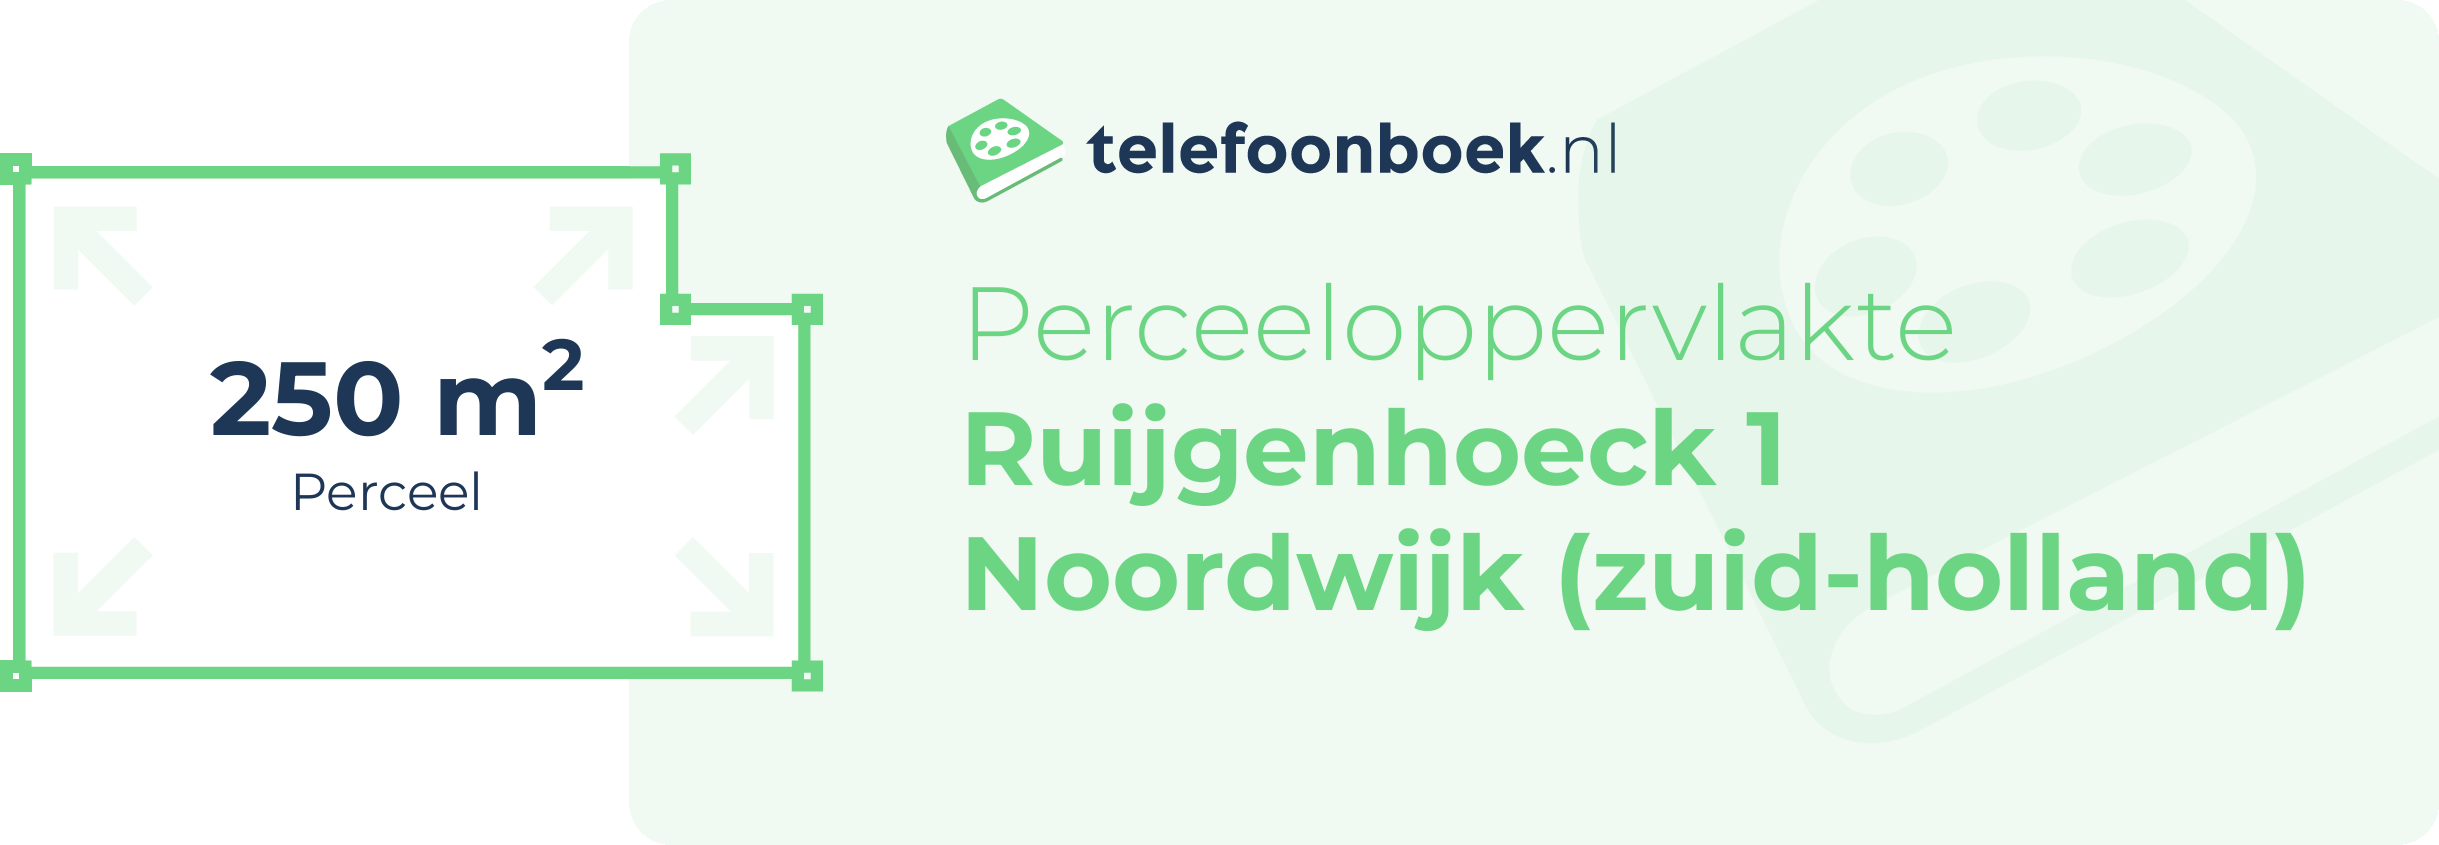 Perceeloppervlakte Ruijgenhoeck 1 Noordwijk (Zuid-Holland)